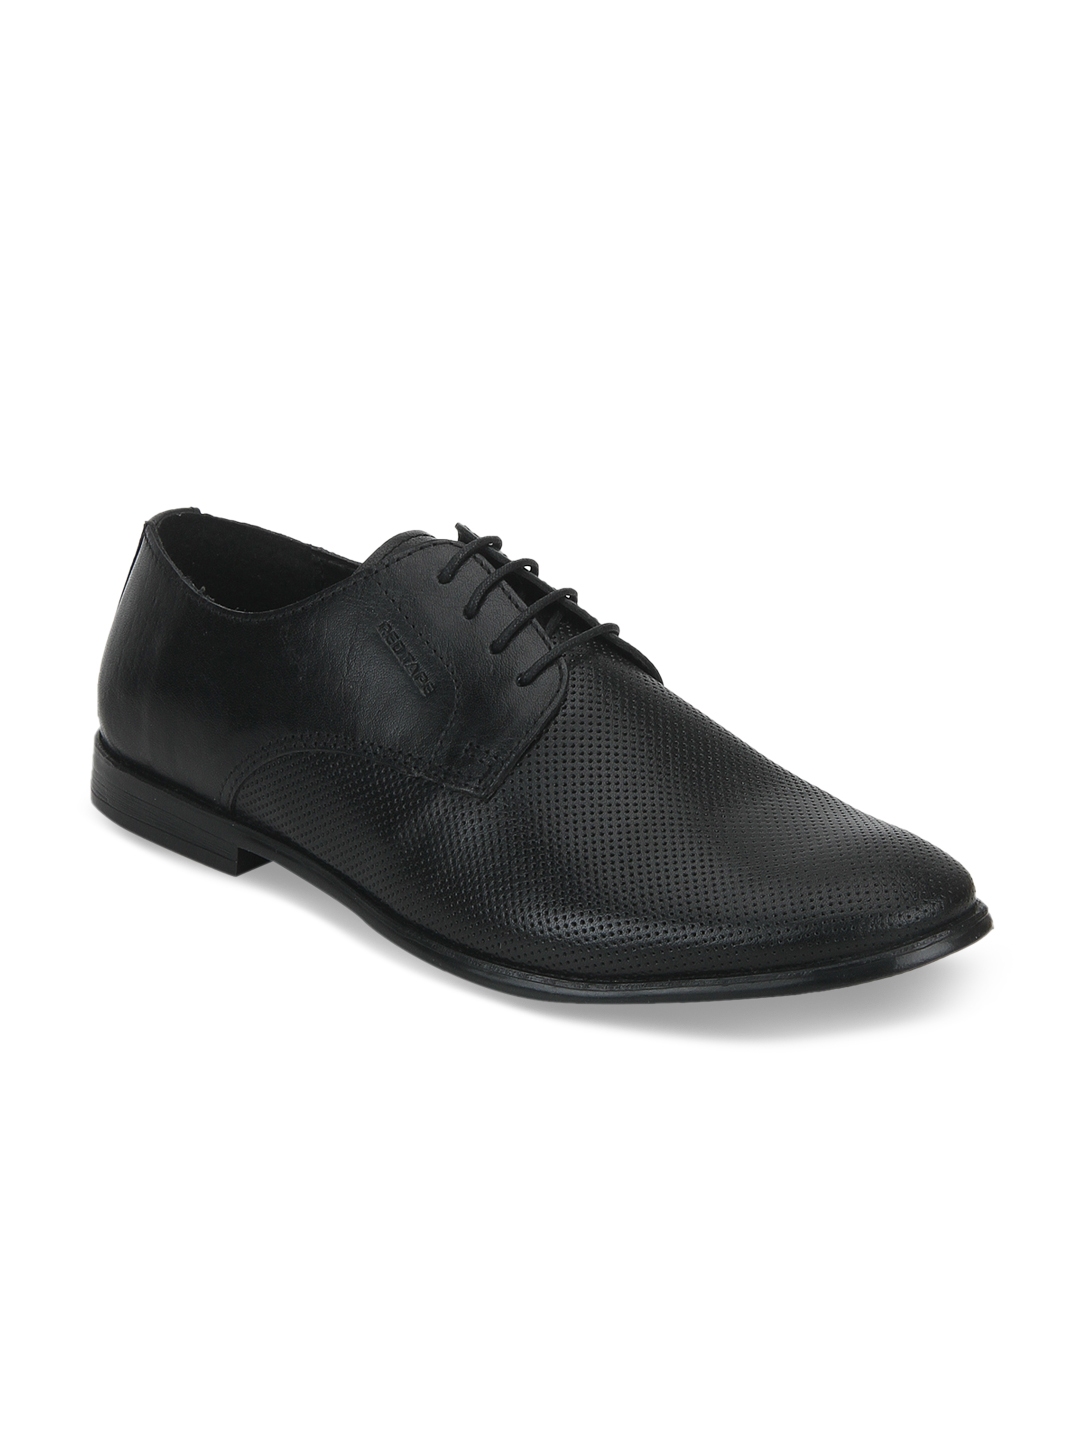 Buy Red Tape Men Black Formal Derbys - Formal Shoes for Men 2420156 ...